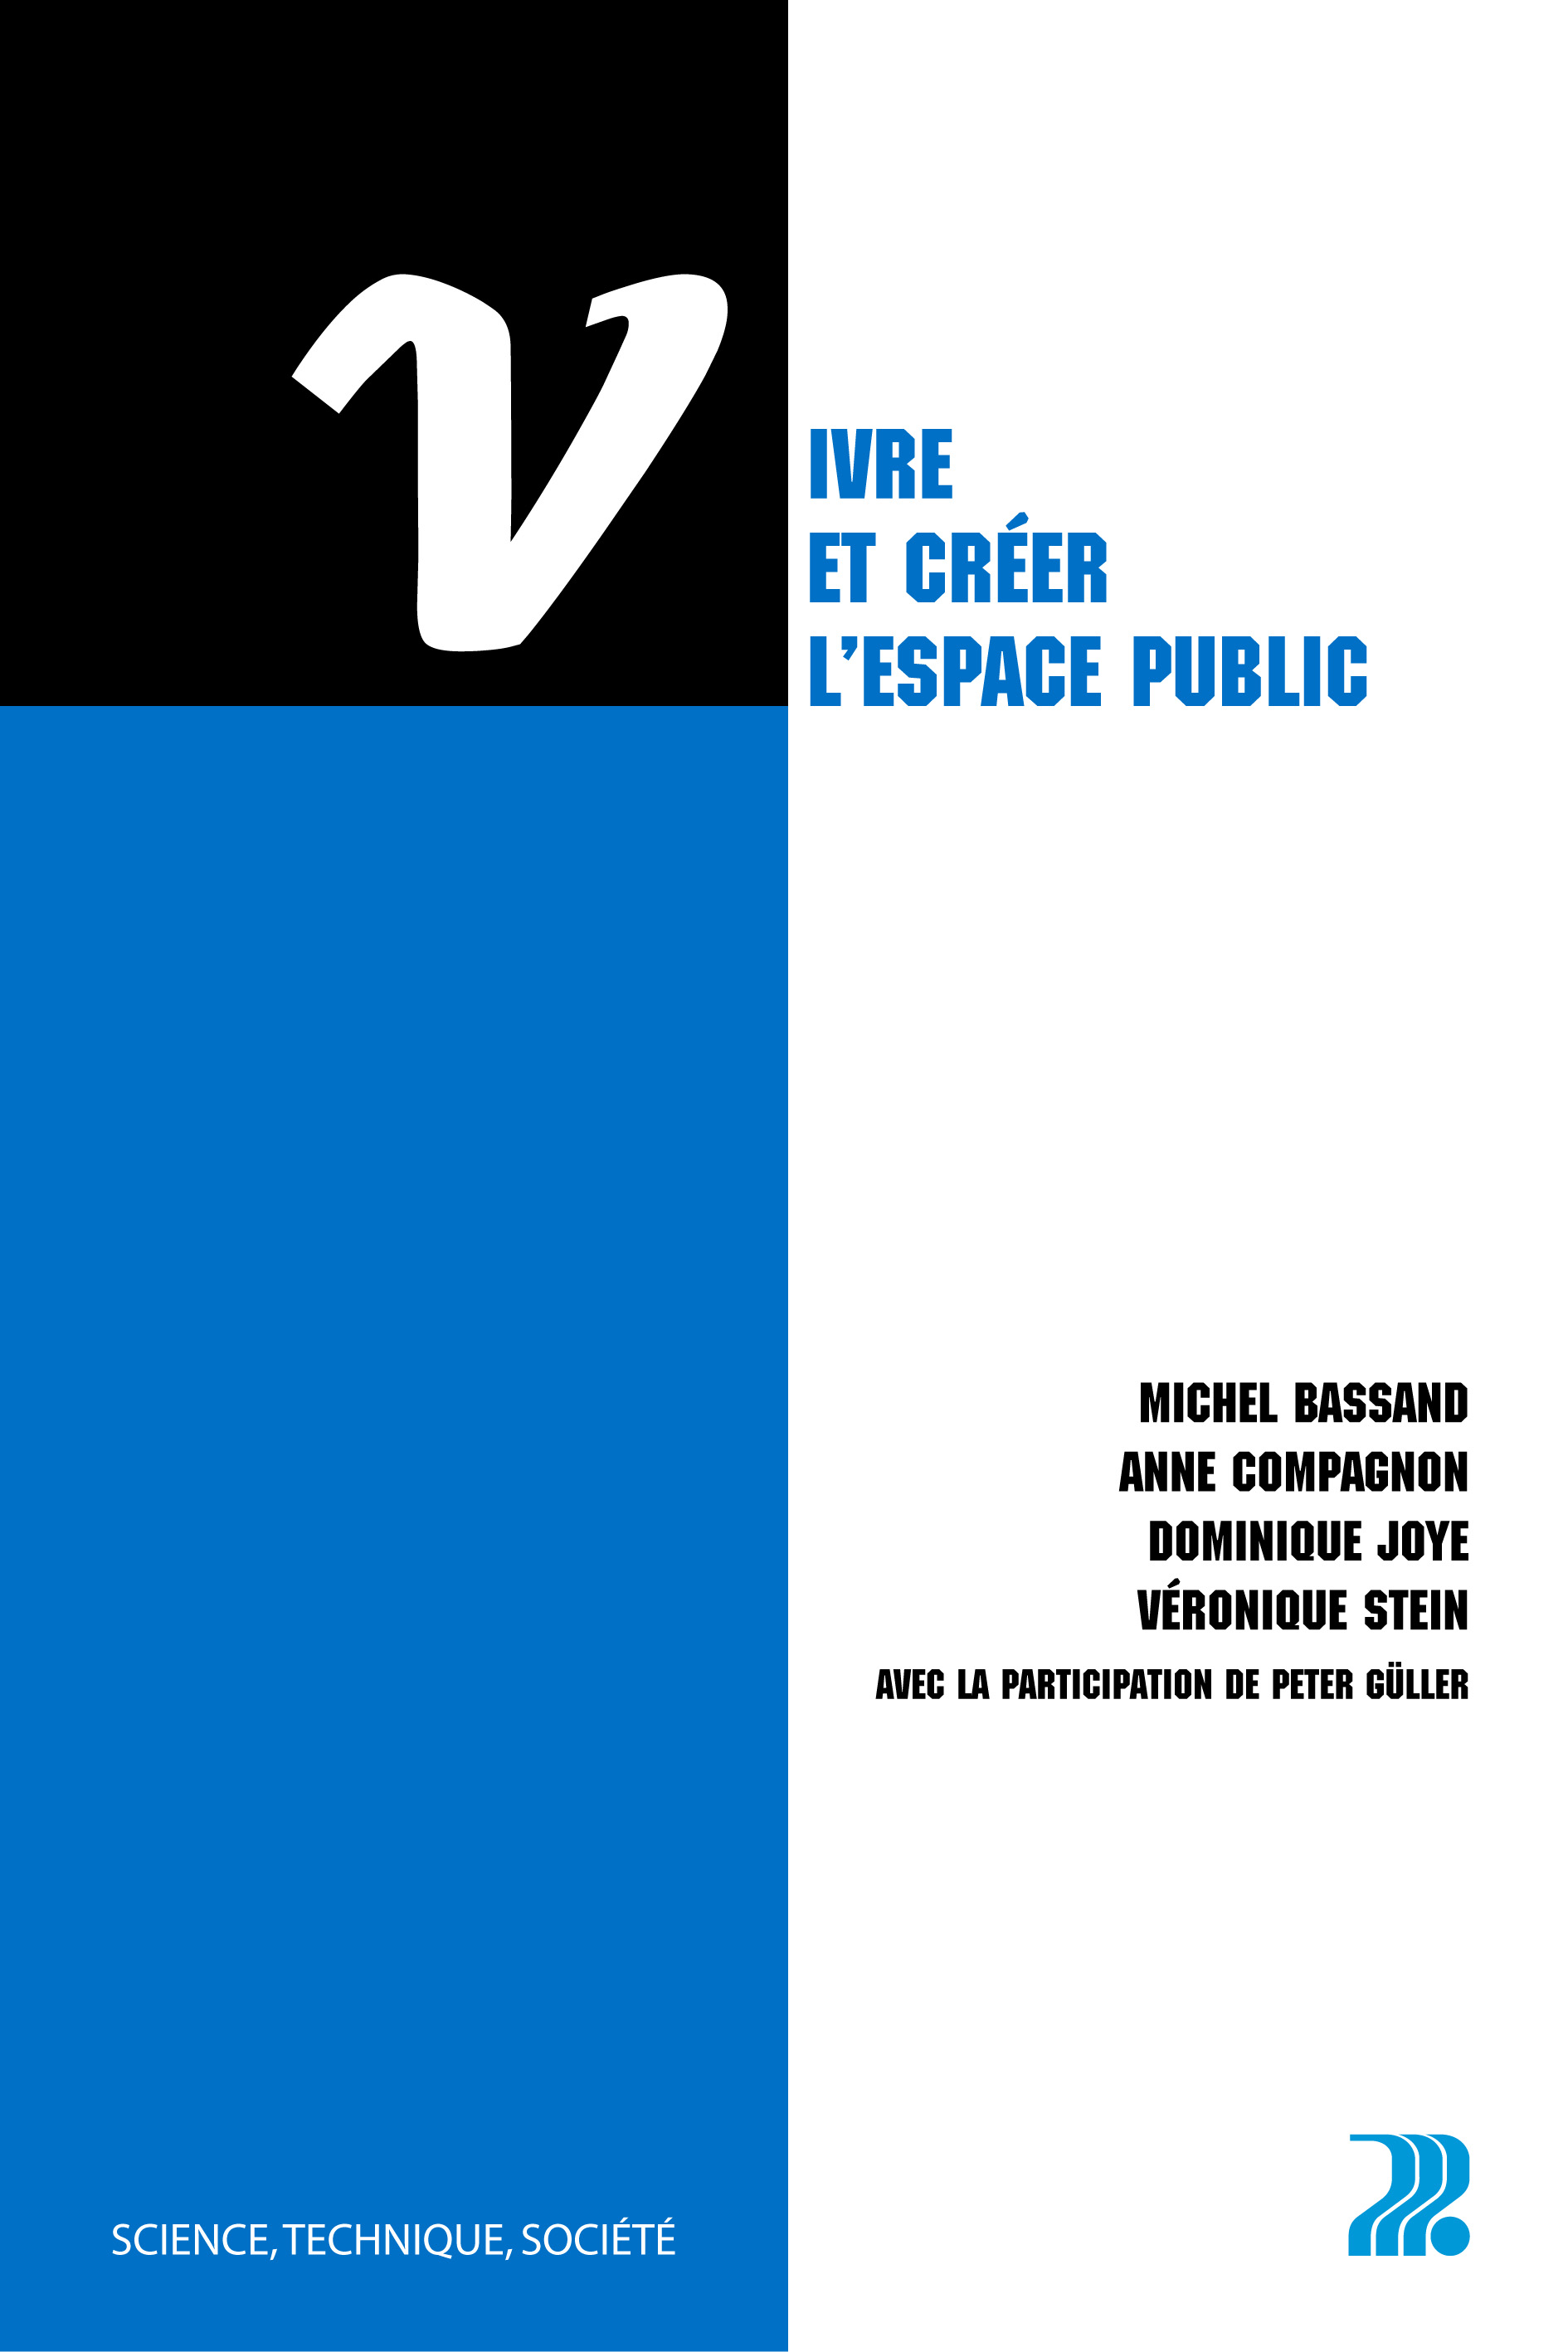 Vivre et créer l'espace public - - Michel Bassand, Anne Compagnon